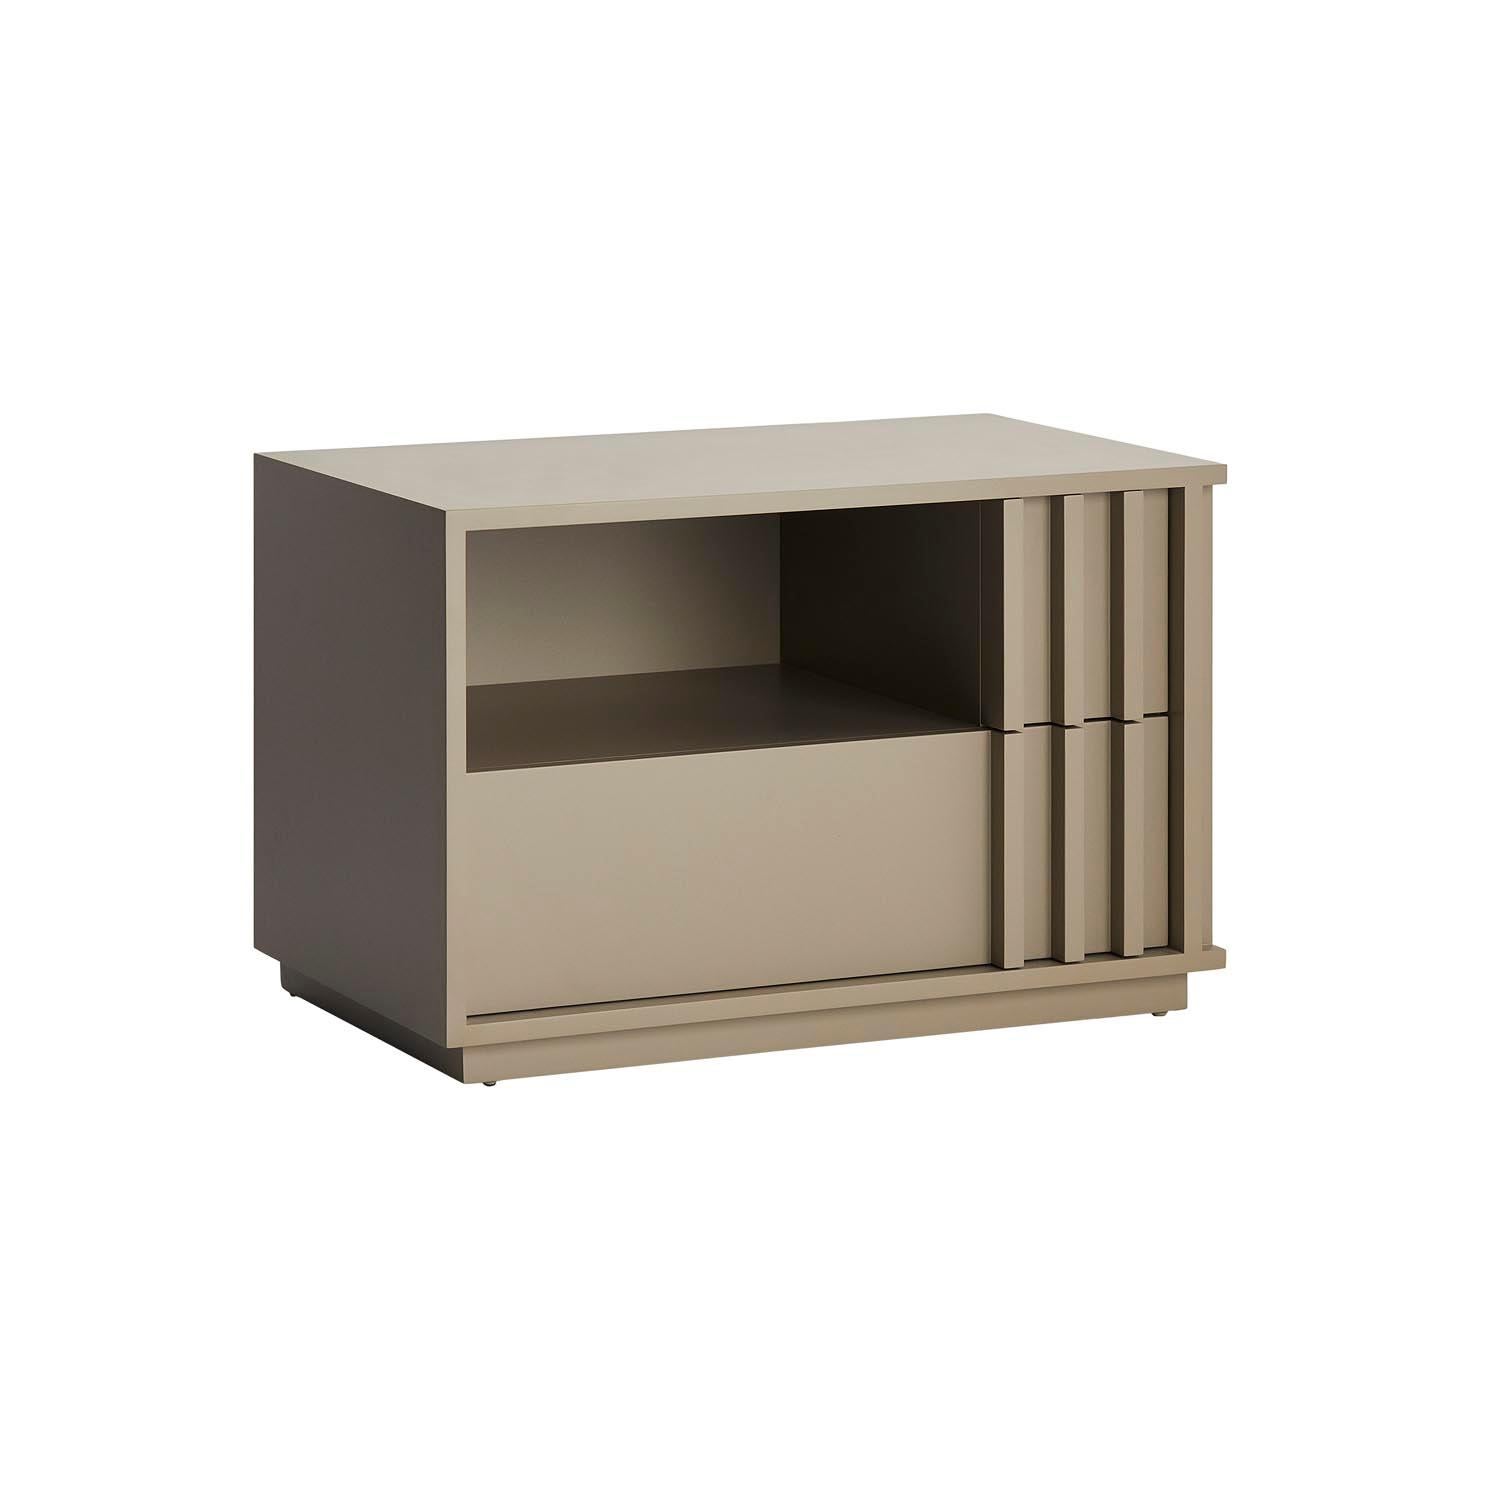 Relevo est une table de chevet moderne et sobre en bois laqué, équipée d'un meuble ouvert et de deux tiroirs revêtus de daim. Relevo est également disponible en bois plaqué.

Représenté en structure laquée brillante de couleur CM8.
 